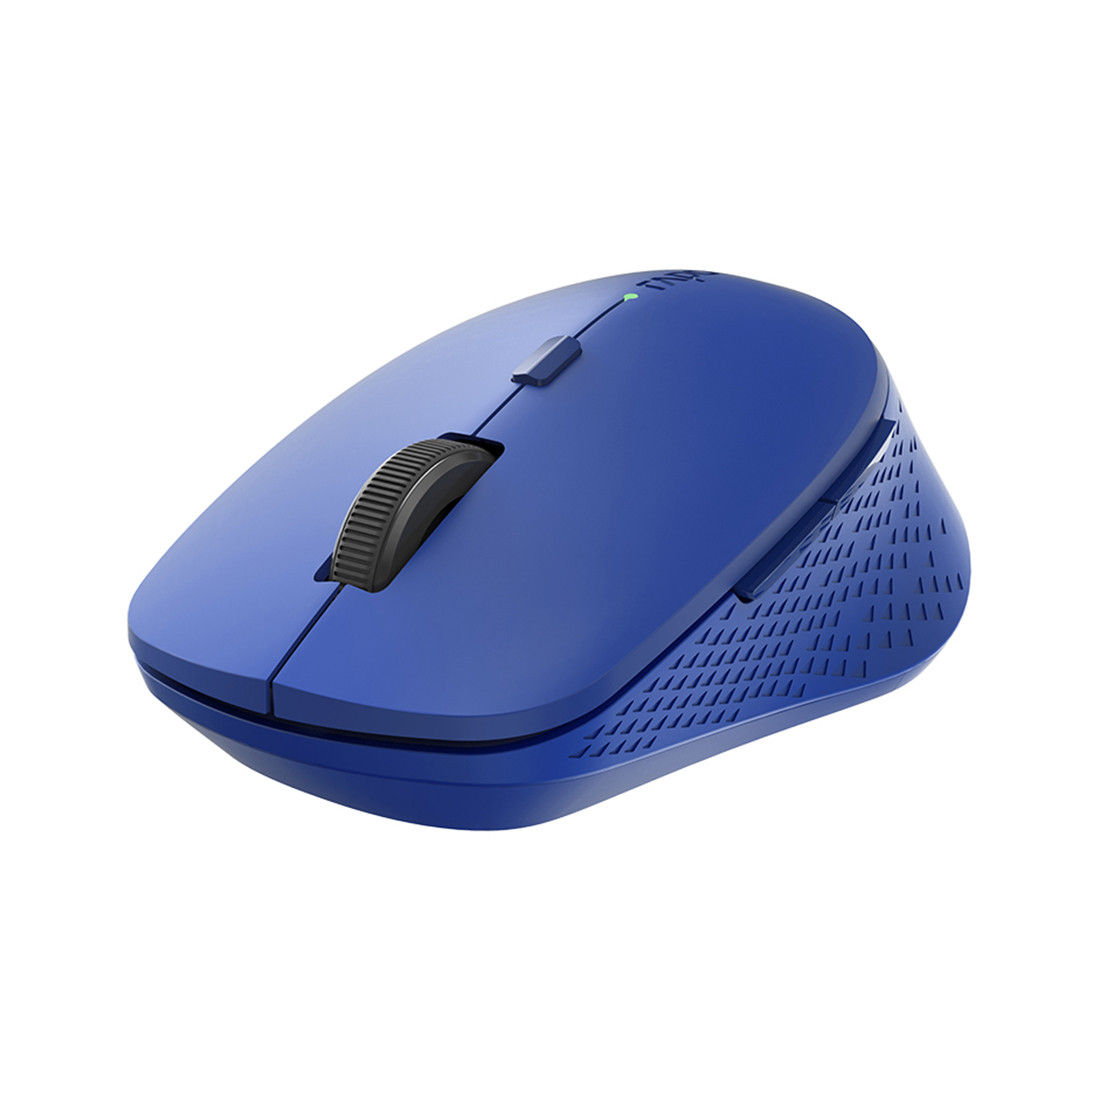 Компьютерная мышь Rapoo M300 Blue, фото 1